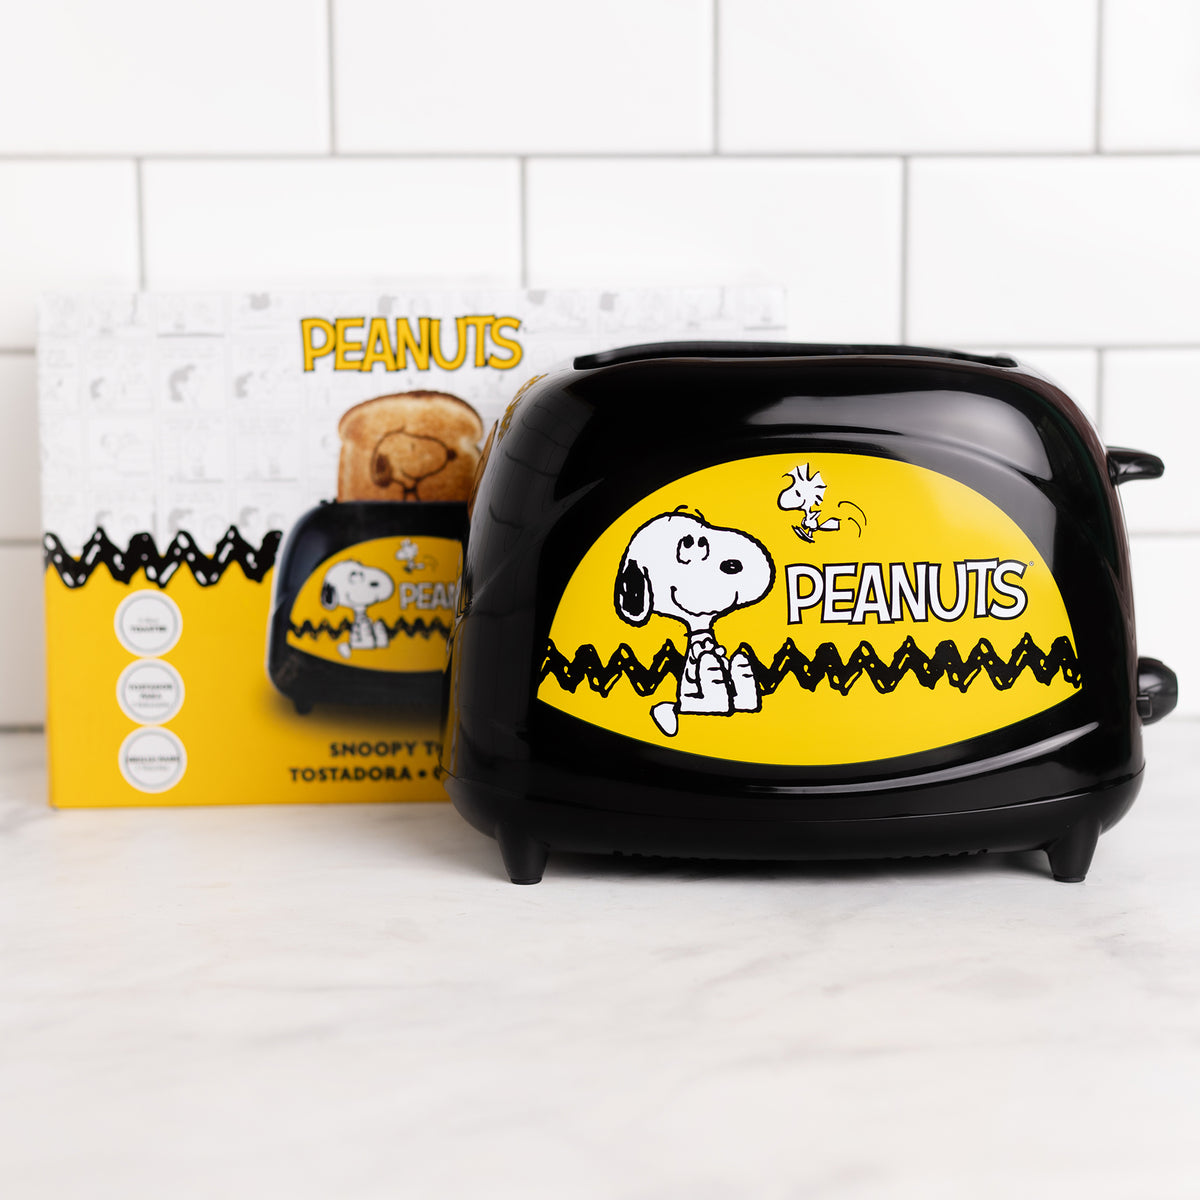 Peanuts Snoopy Toaster